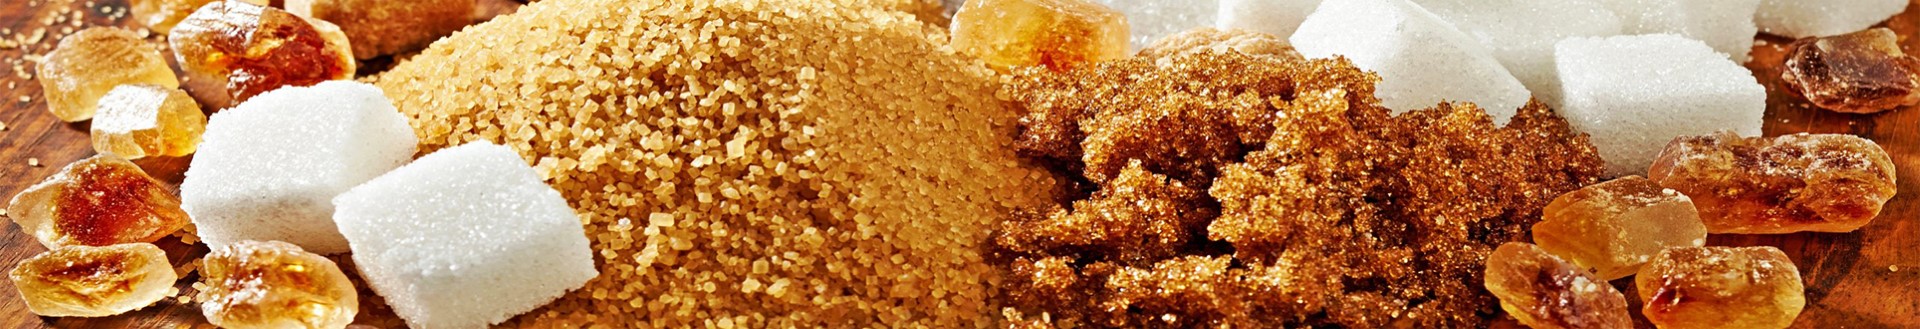 Chất ngọt tổng hợp – Sucralose powder